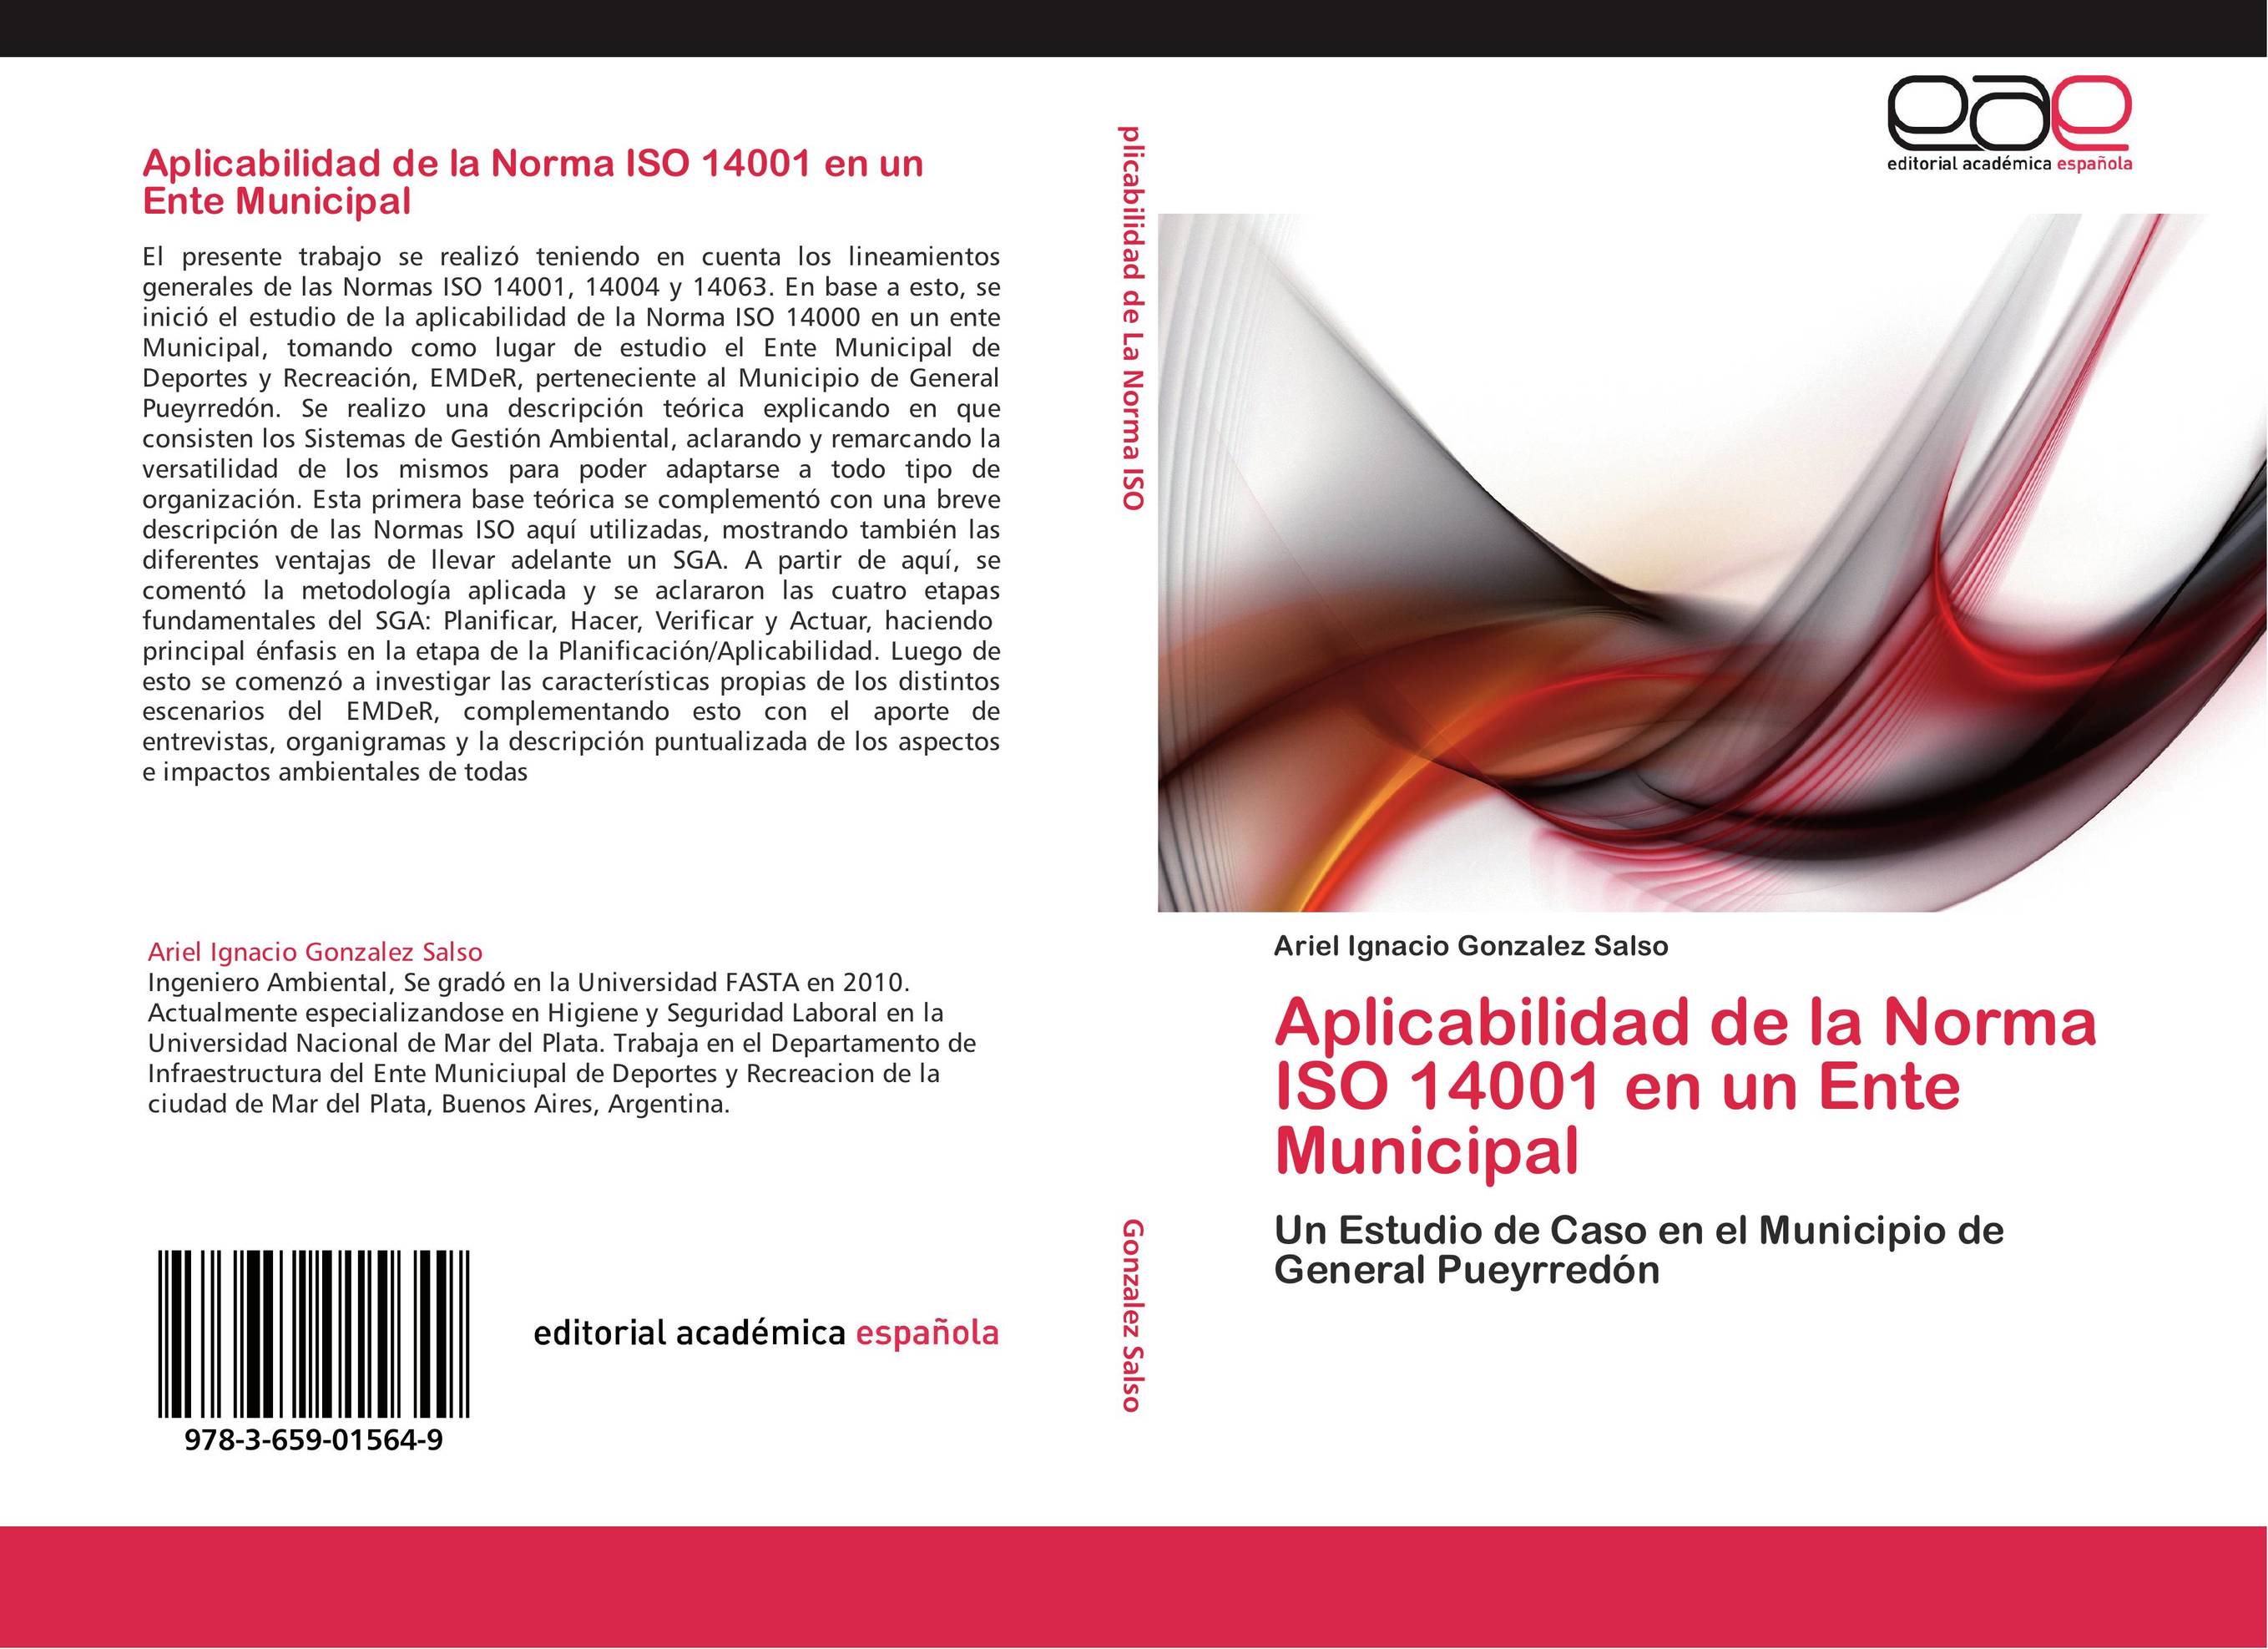 Aplicabilidad de la Norma ISO 14001 en un Ente Municipal